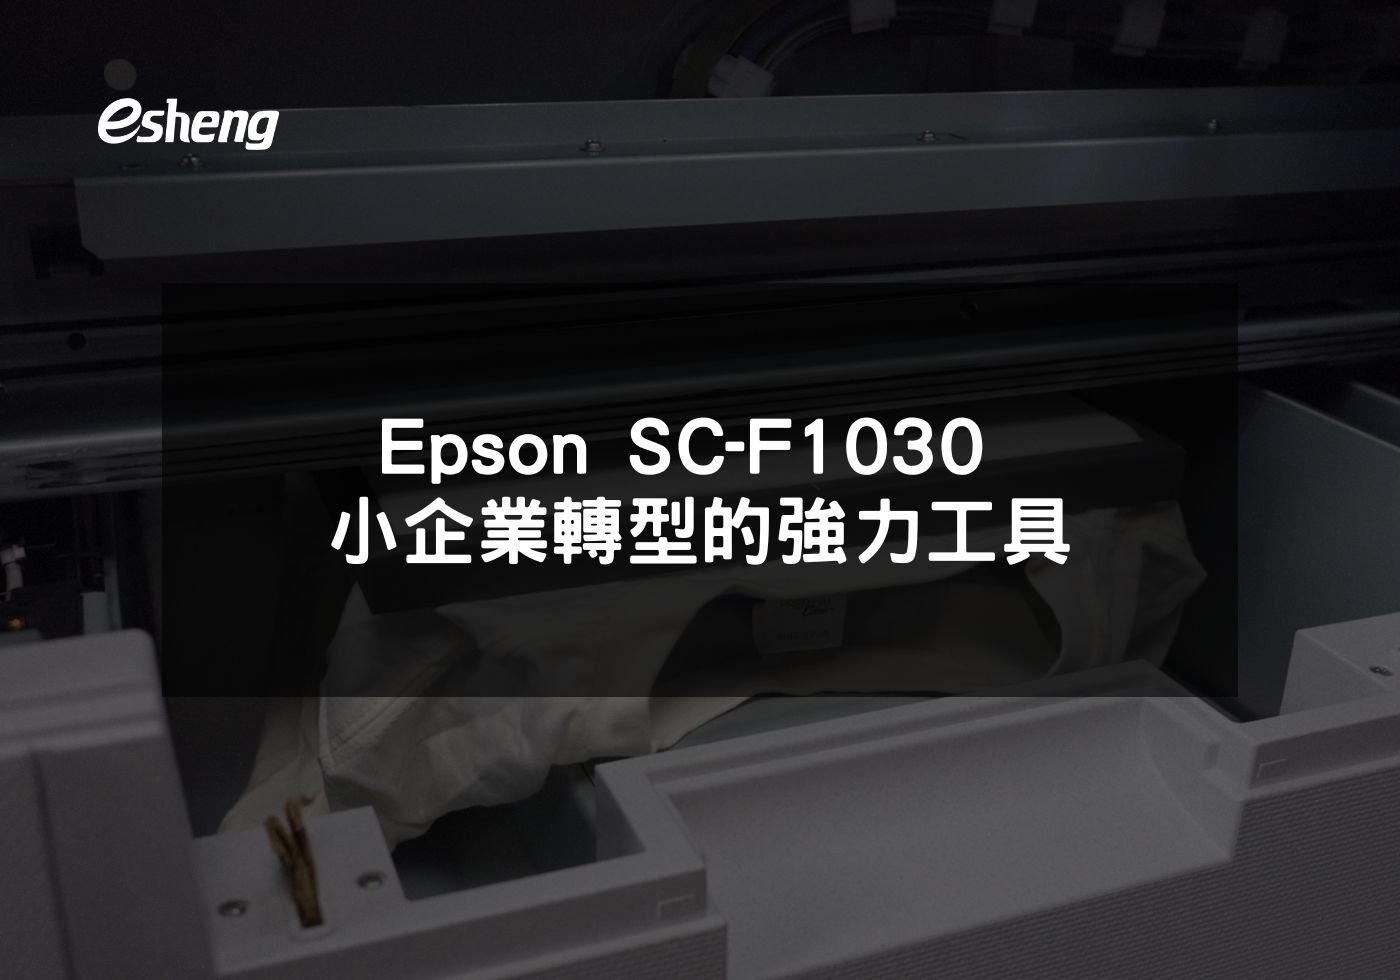 您目前正在查看 Epson SC-F1030 小企業轉型的強力工具